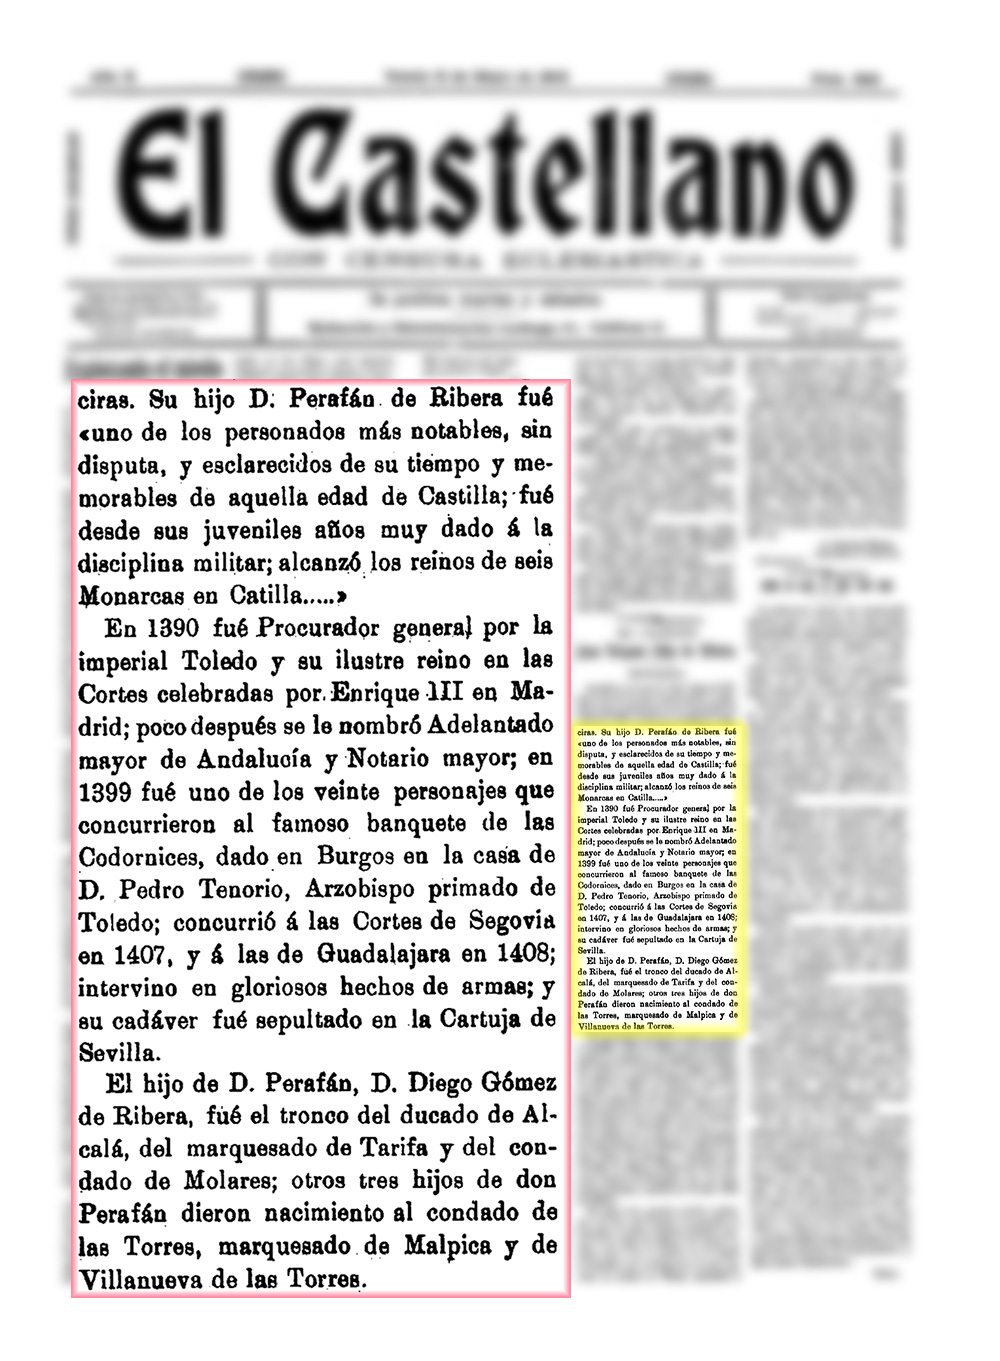 Reseña sobre Per Afan de Ribera. El Castellano. 06/05/1913